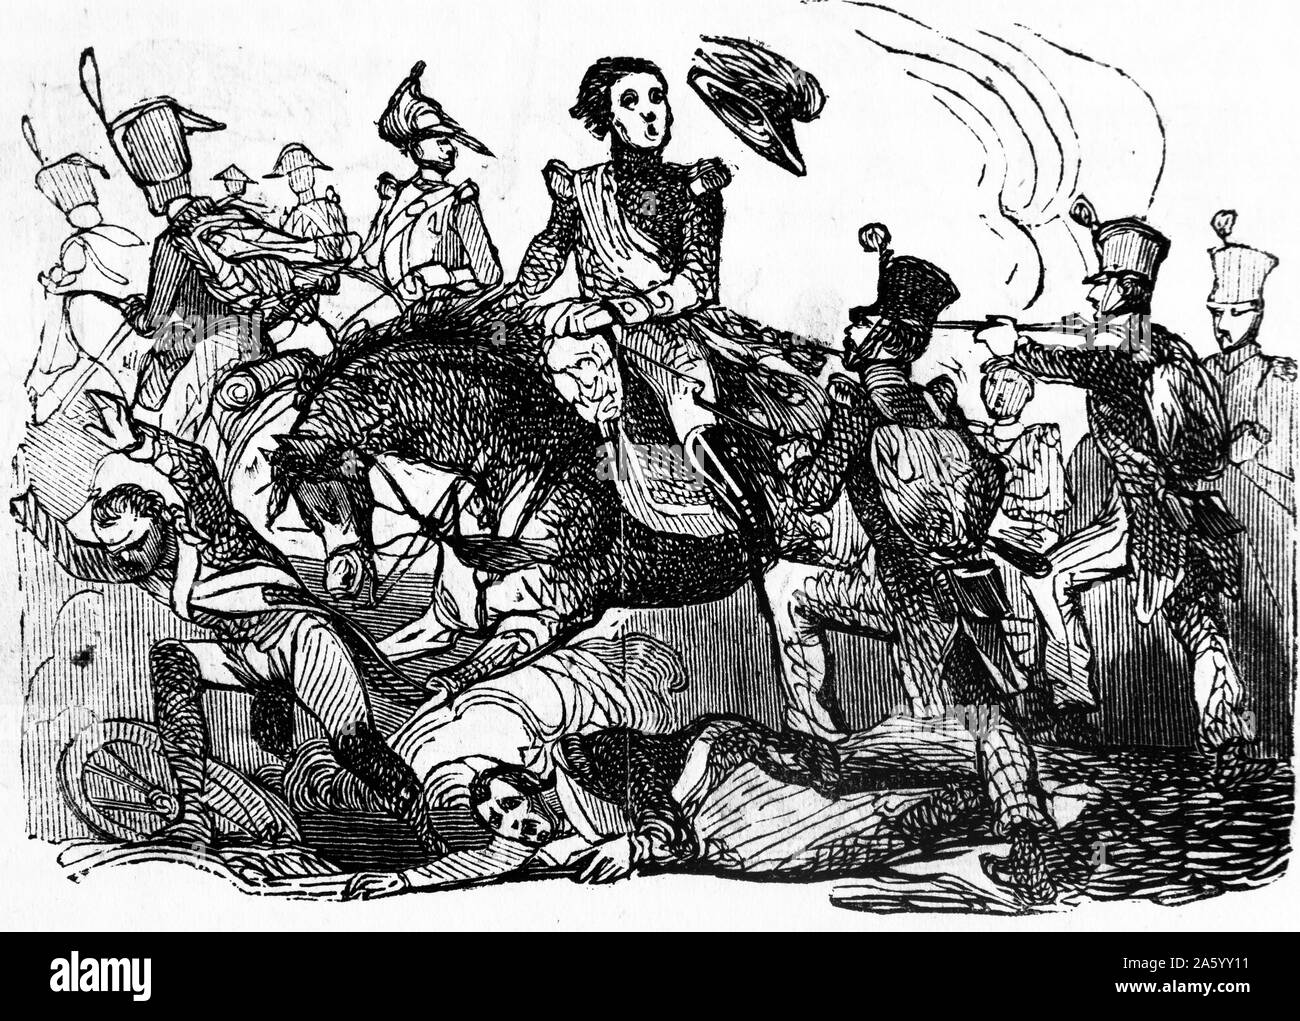 Gravur zeigt eine Kampfszene während des Unabhängigkeitskrieges (1807 – 1814) war ein militärischer Konflikt zwischen Napoleons reich und den Alliierten Mächten von Spanien, Großbritannien und Portugal für die Kontrolle der iberischen Halbinsel während der napoleonischen Kriege. Vom Jahre 1809 Stockfoto